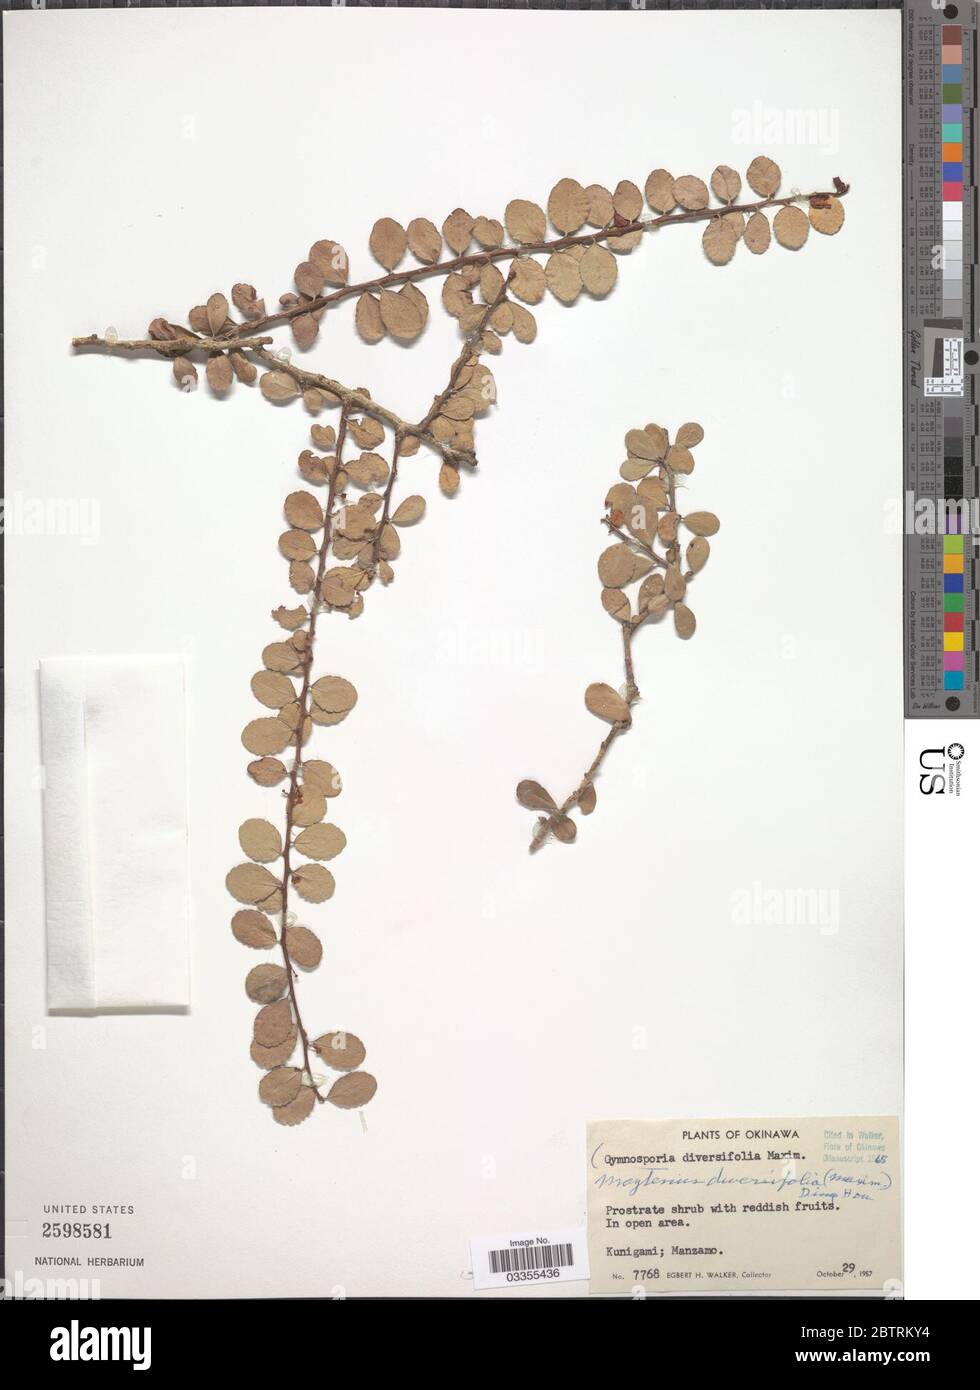 Gymnosporia diversifolia A Gray ex Maxim. Stock Photo